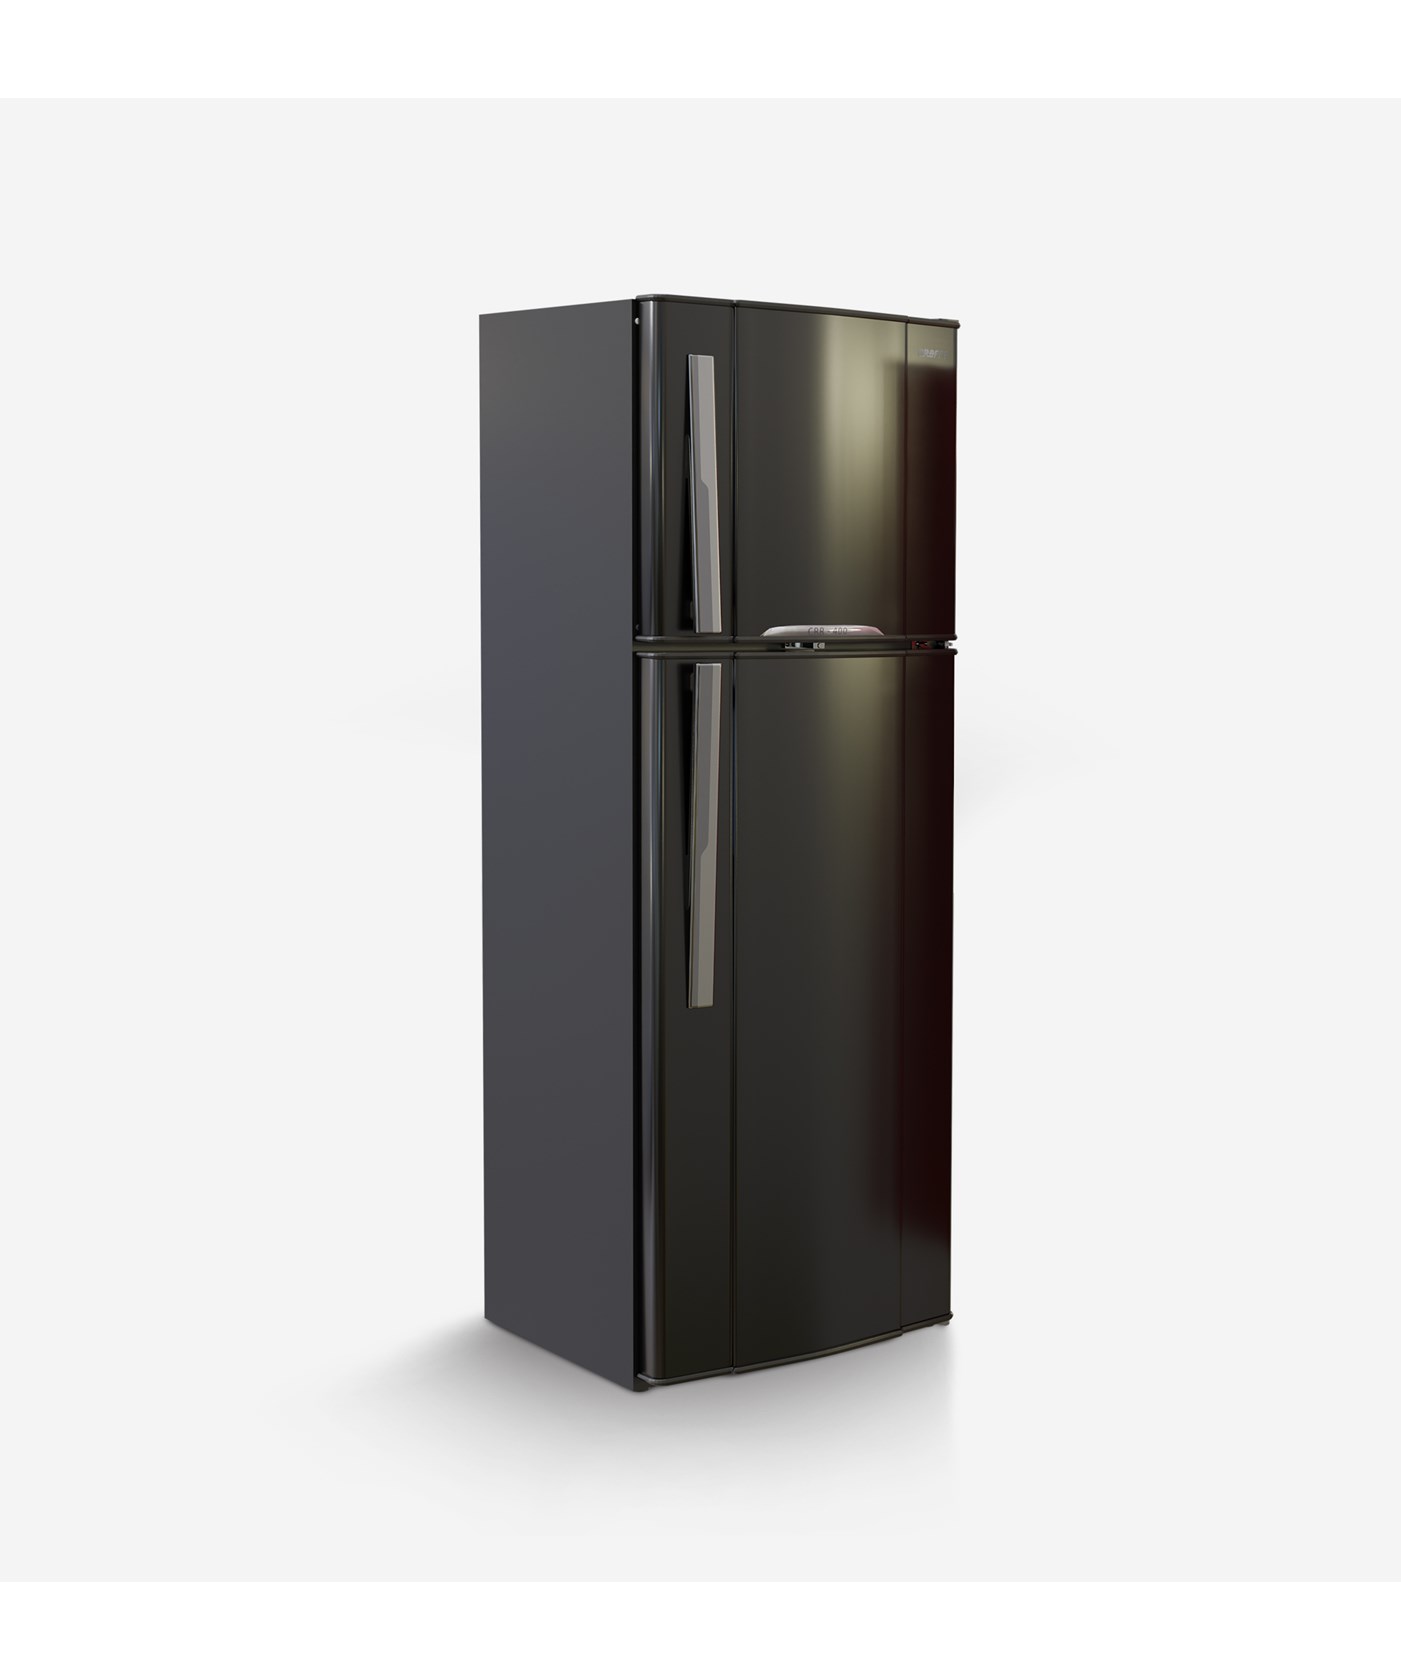 18 Feet Black Refrigerator||Refrigerators 